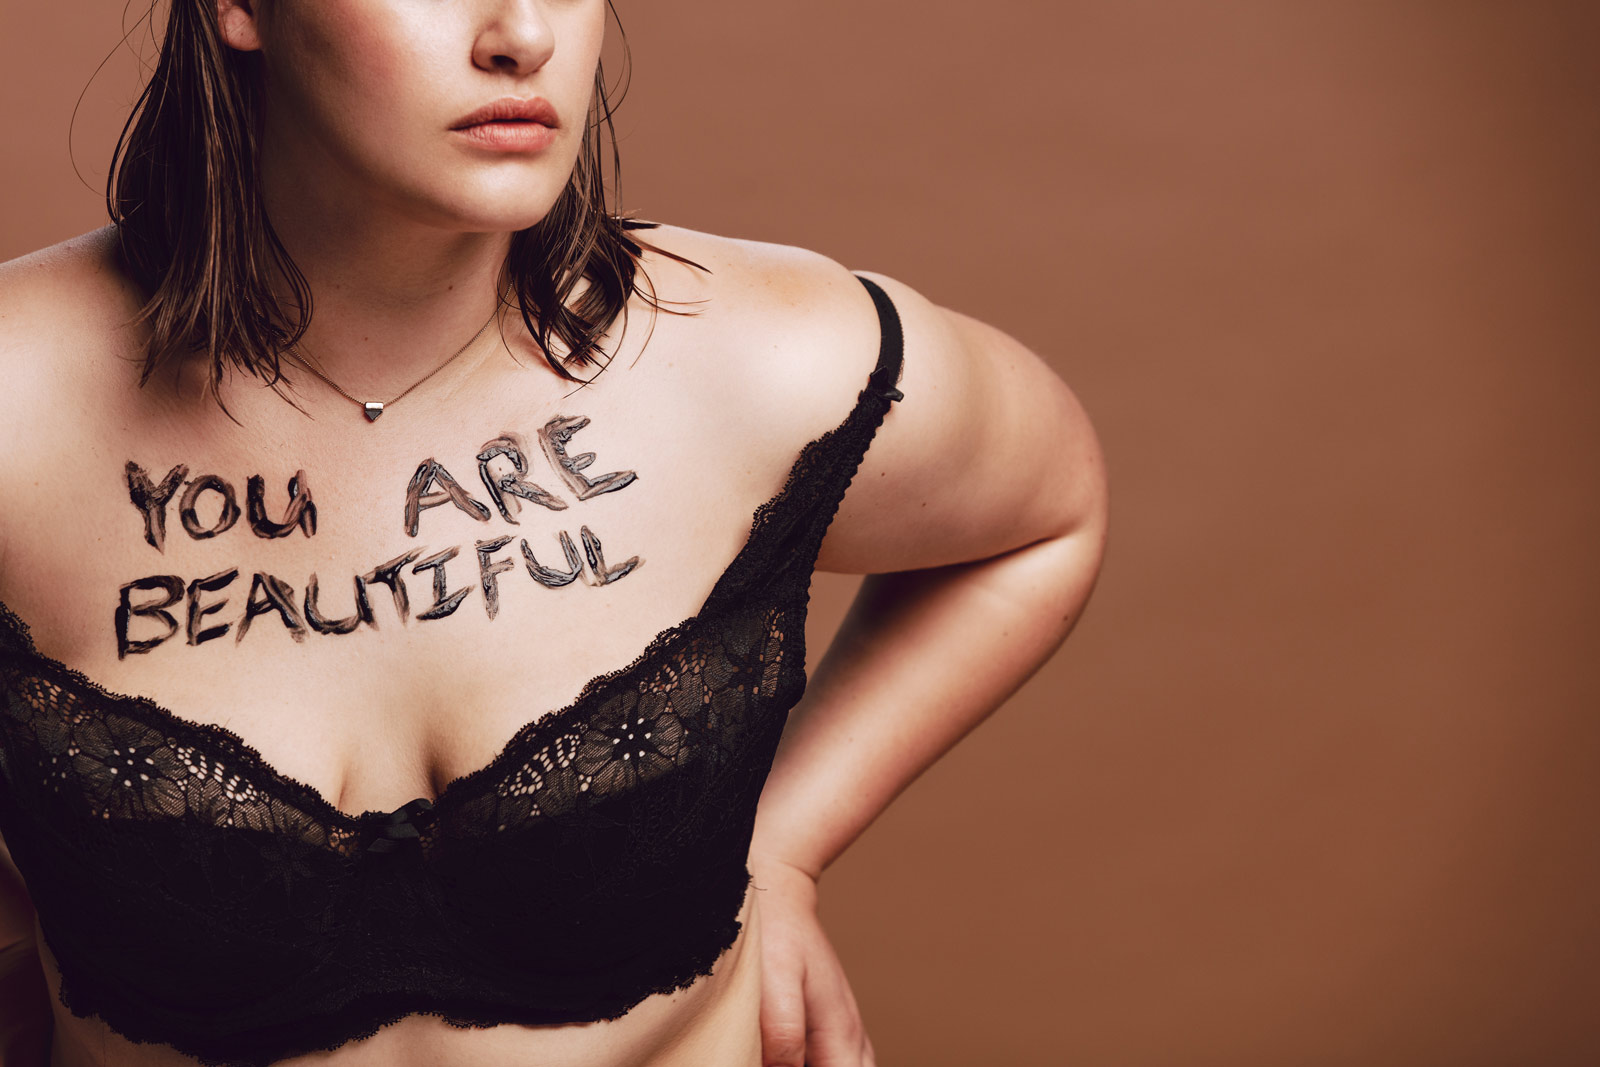 Es ist der leicht bekleidete Oberkörper einer Frau mit Adipositas zu sehen, auf der Brust steht in brauner Farbe: "You are beautiful"